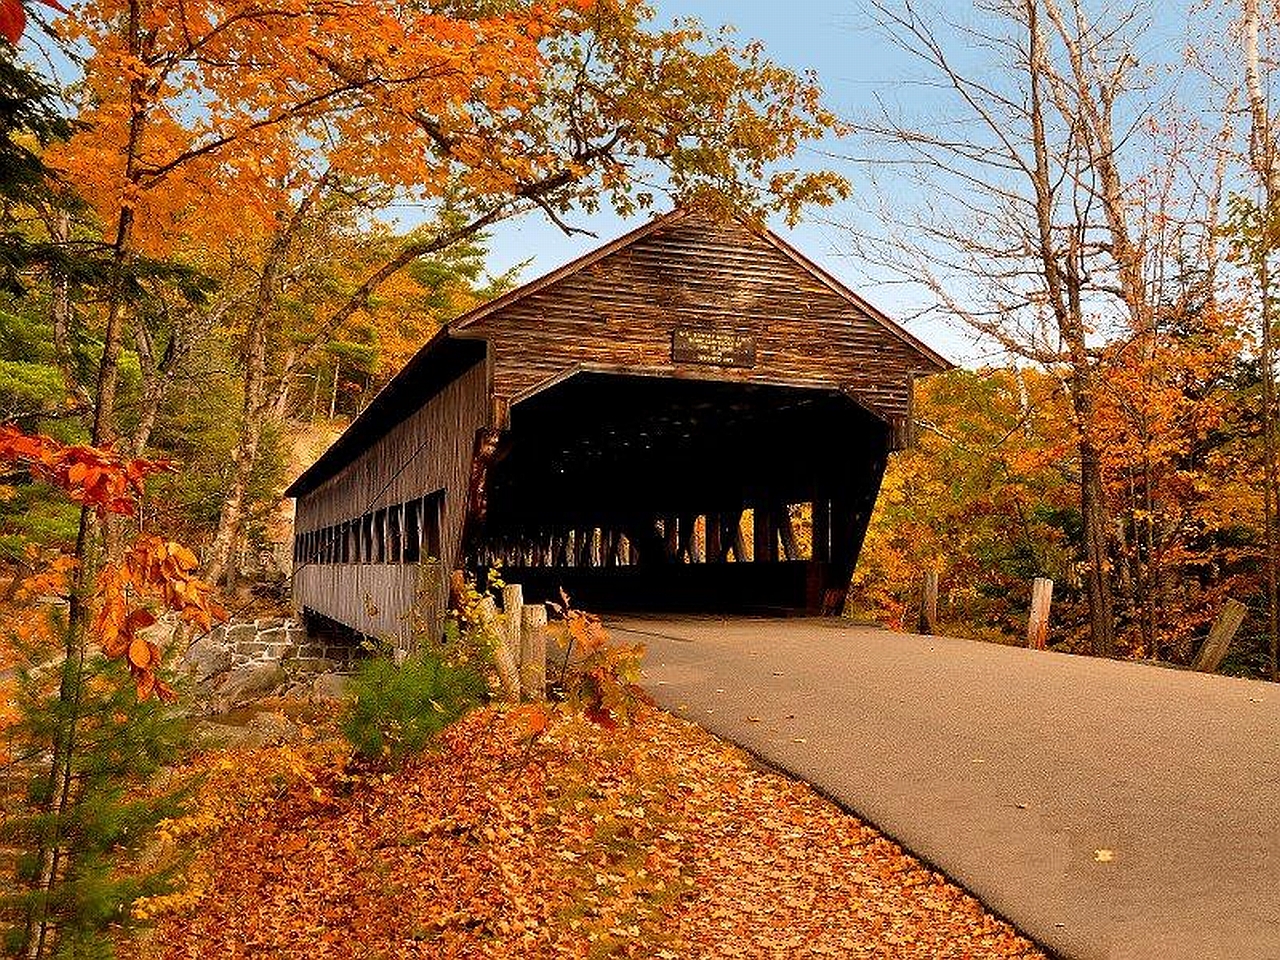 Covered Bridge in Autumn